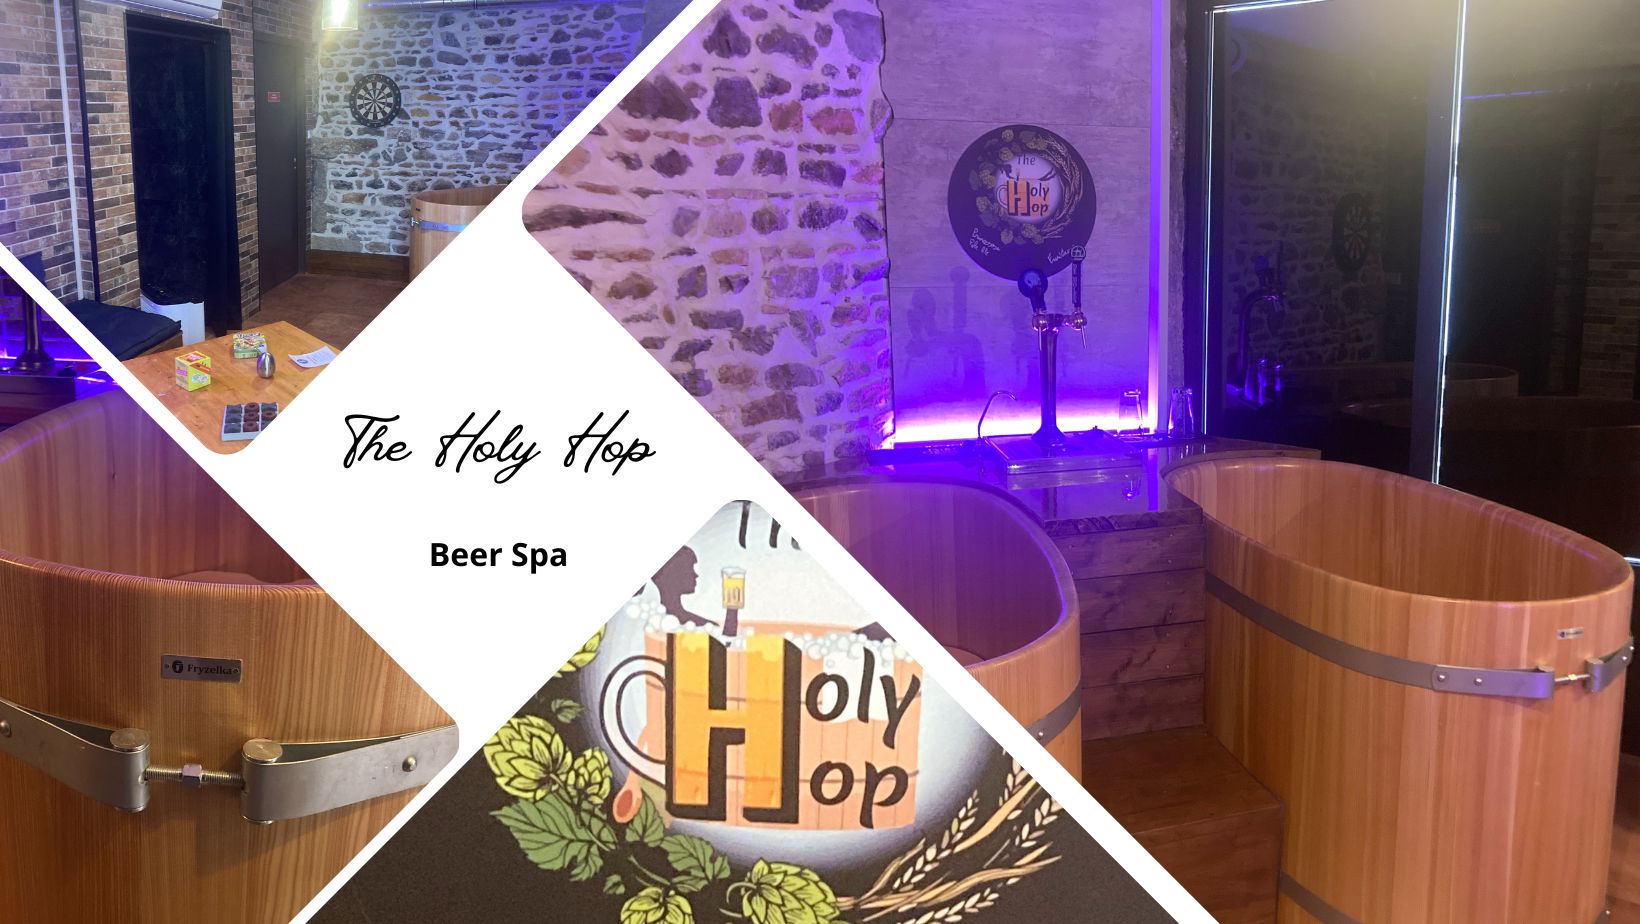 On a testé : The Holy Hop - Beer Spa, le premier spa à bière à Lyon